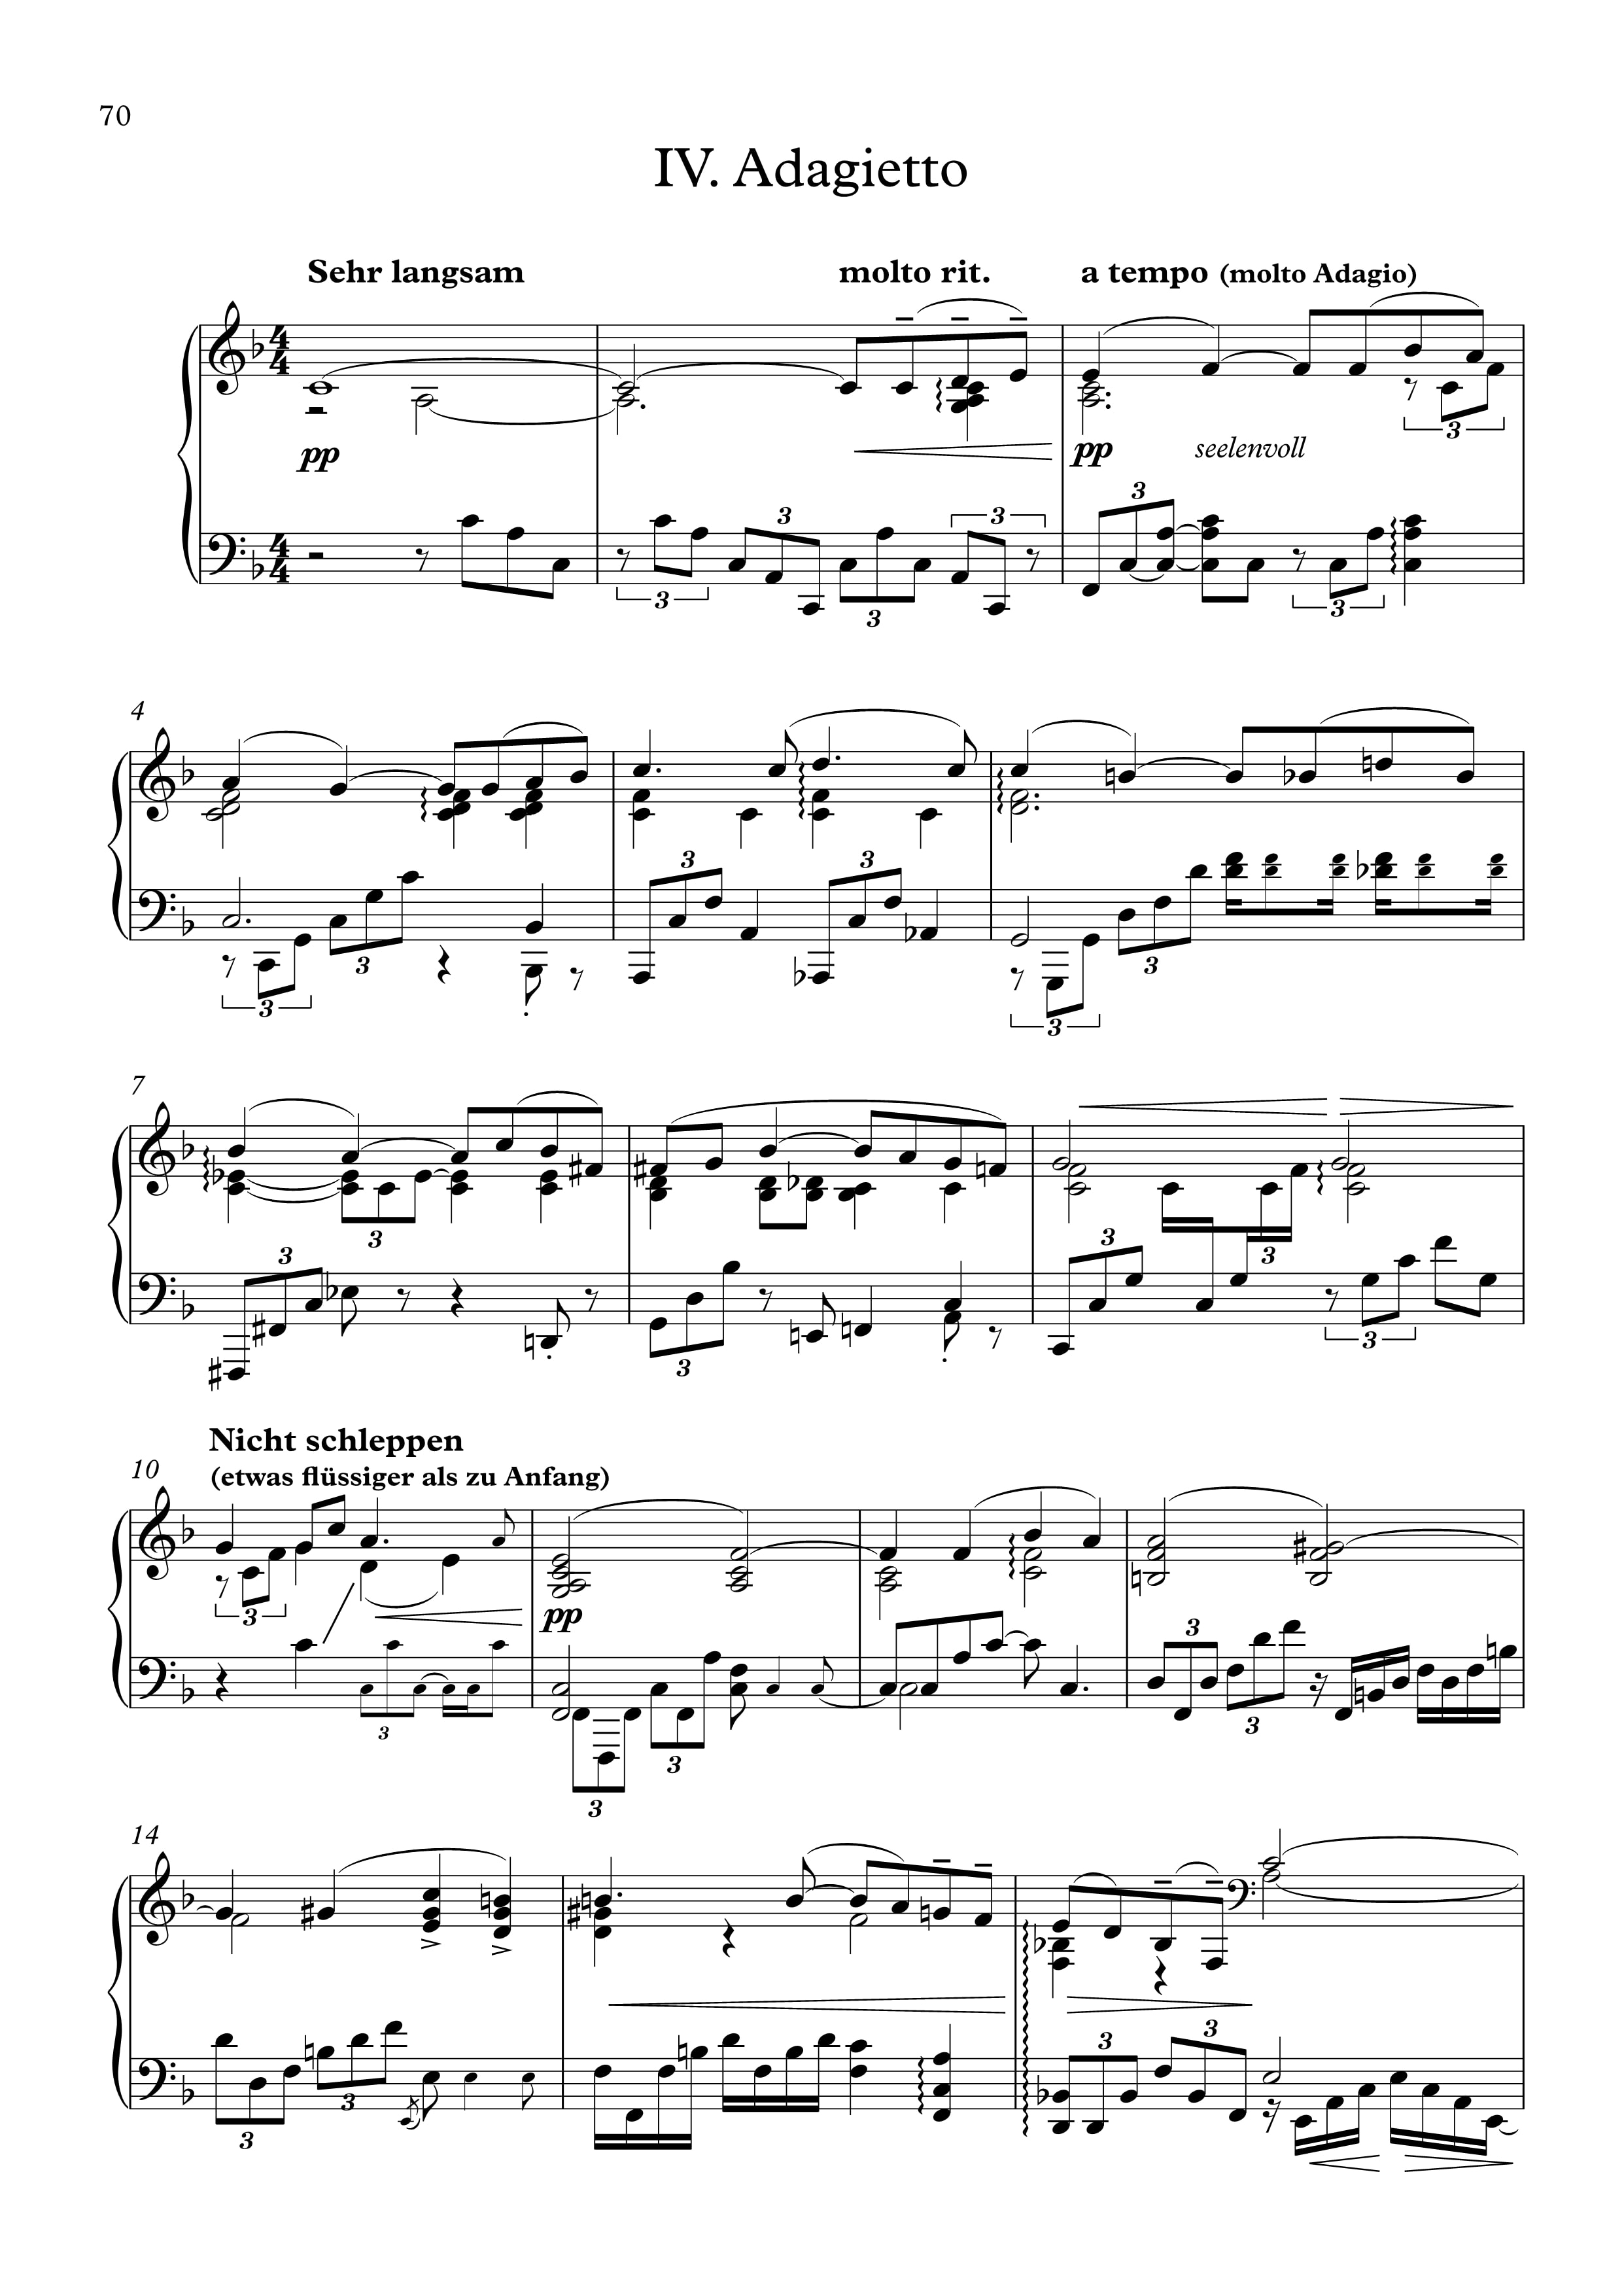 dalla 5.a Sinfonia Mahler ; riduzione per pianof 28060 Spartito Adagietto G 